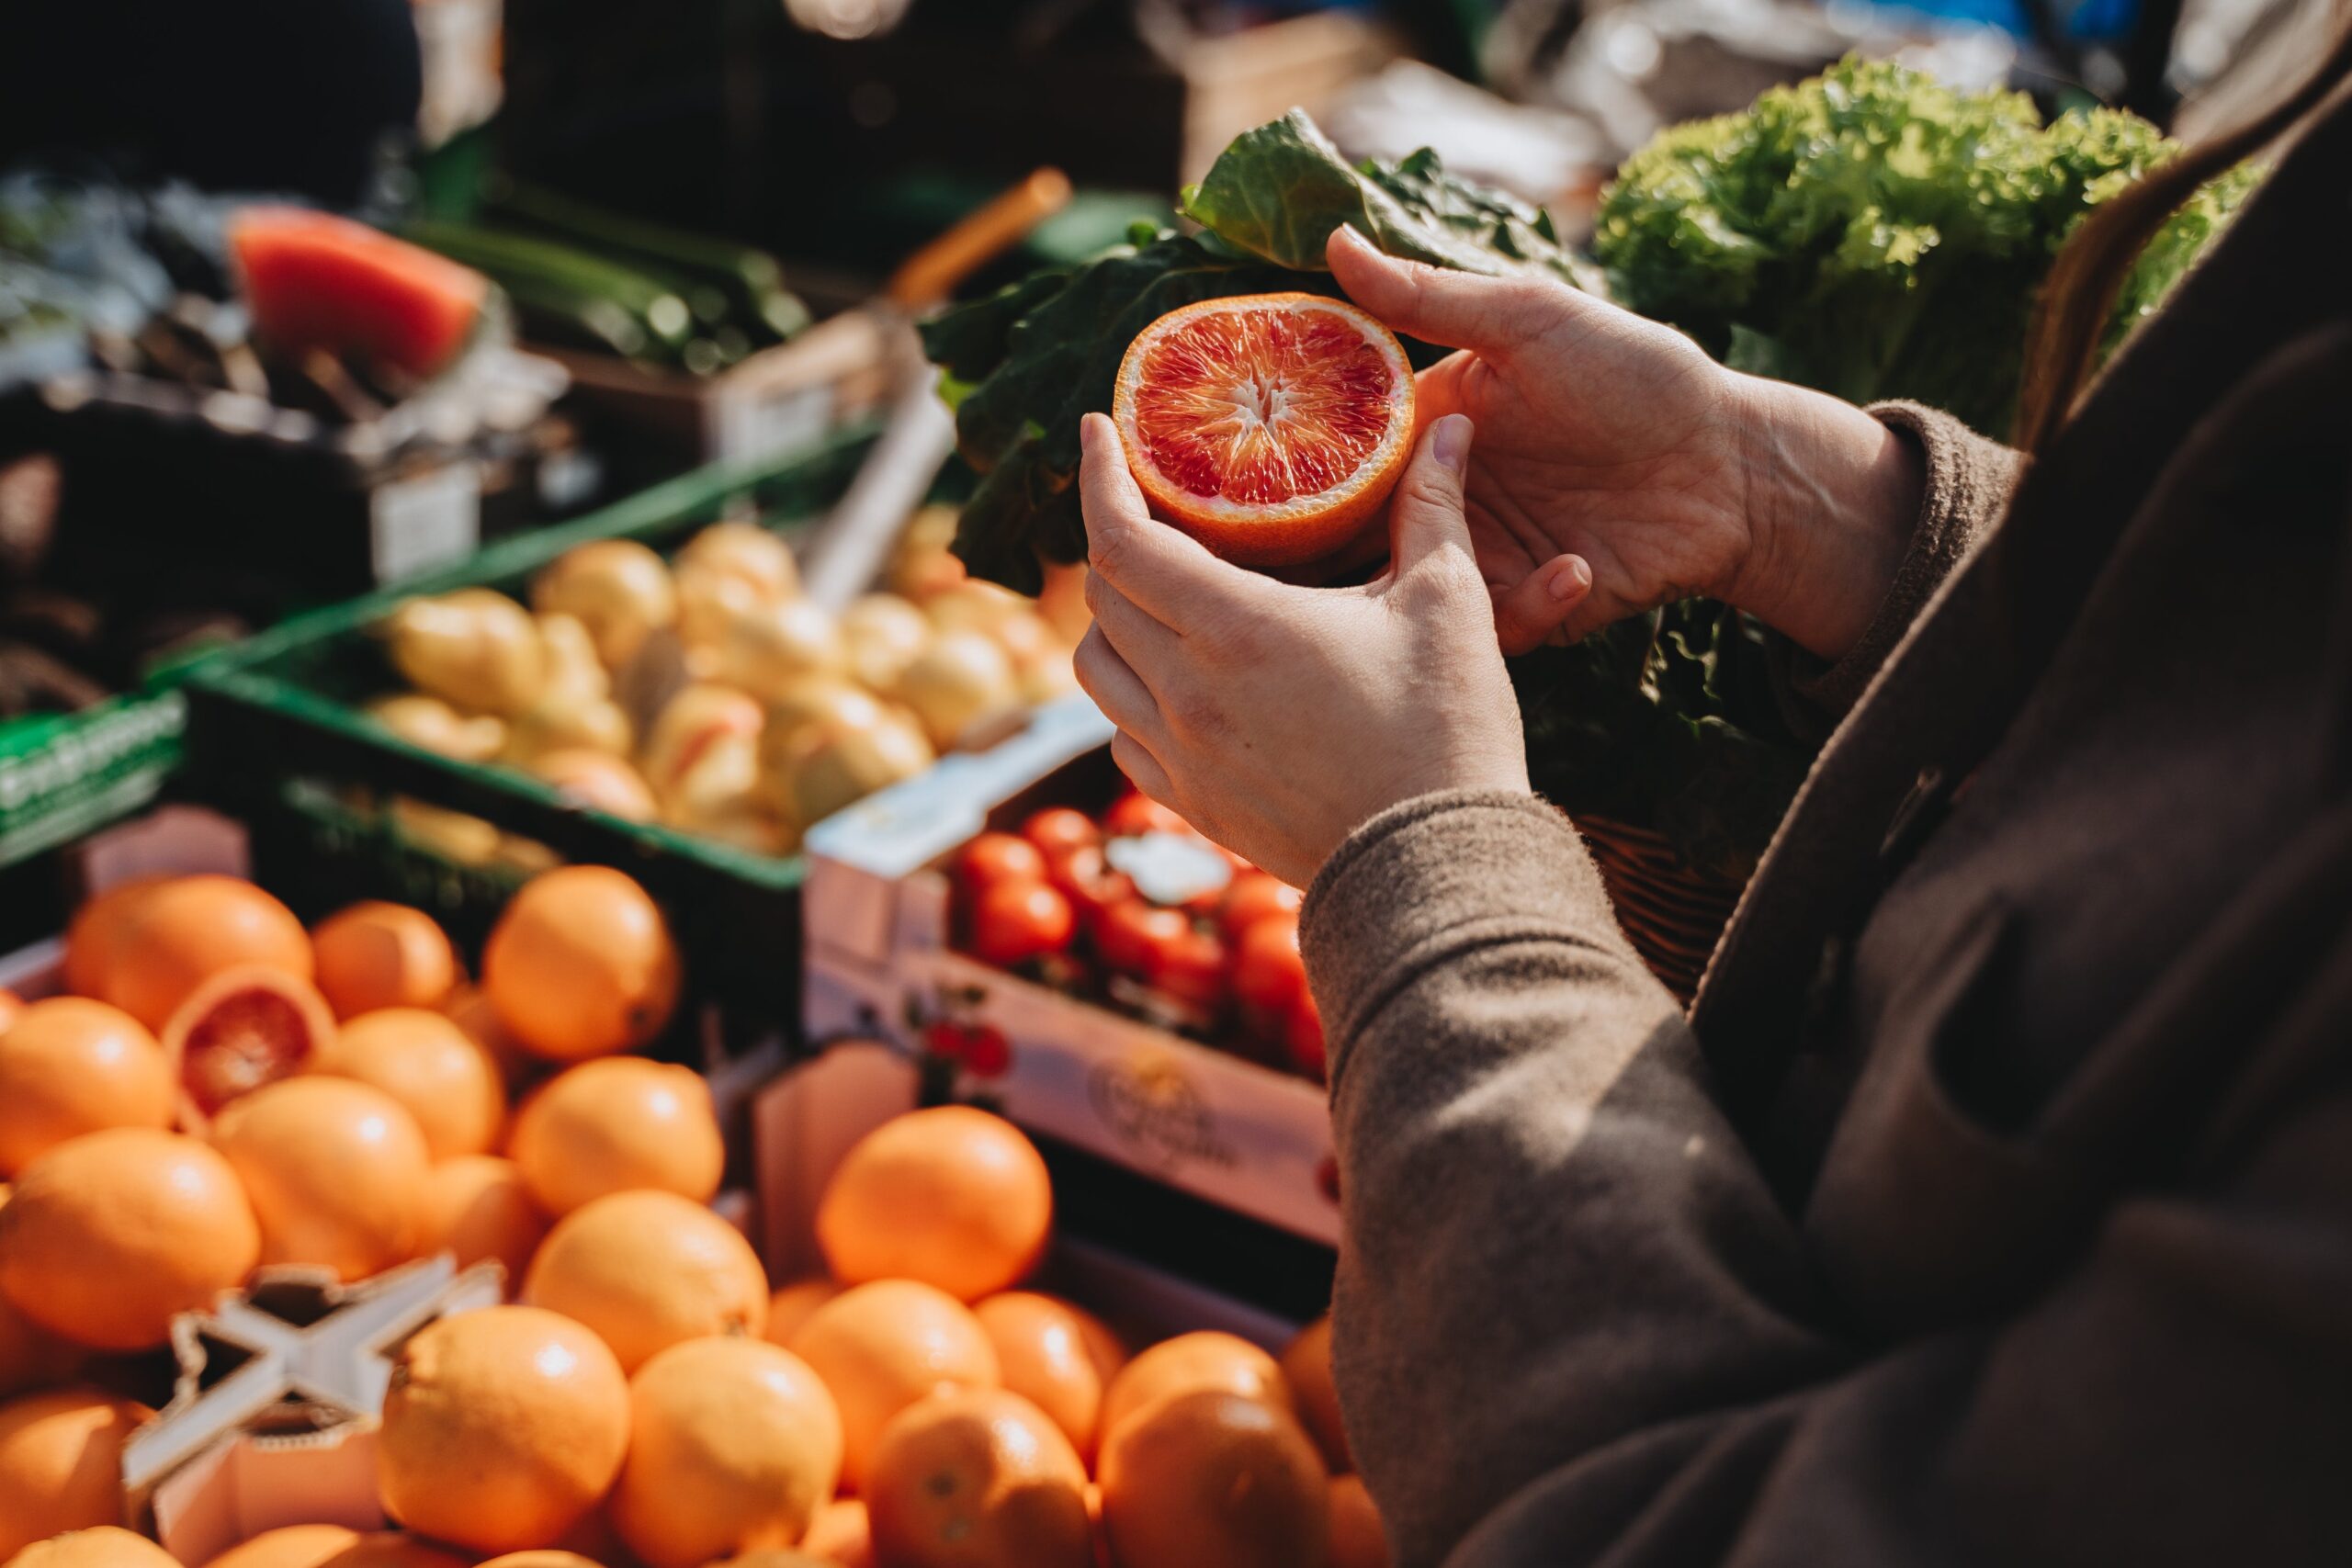 Frutas y verduras en el mercado